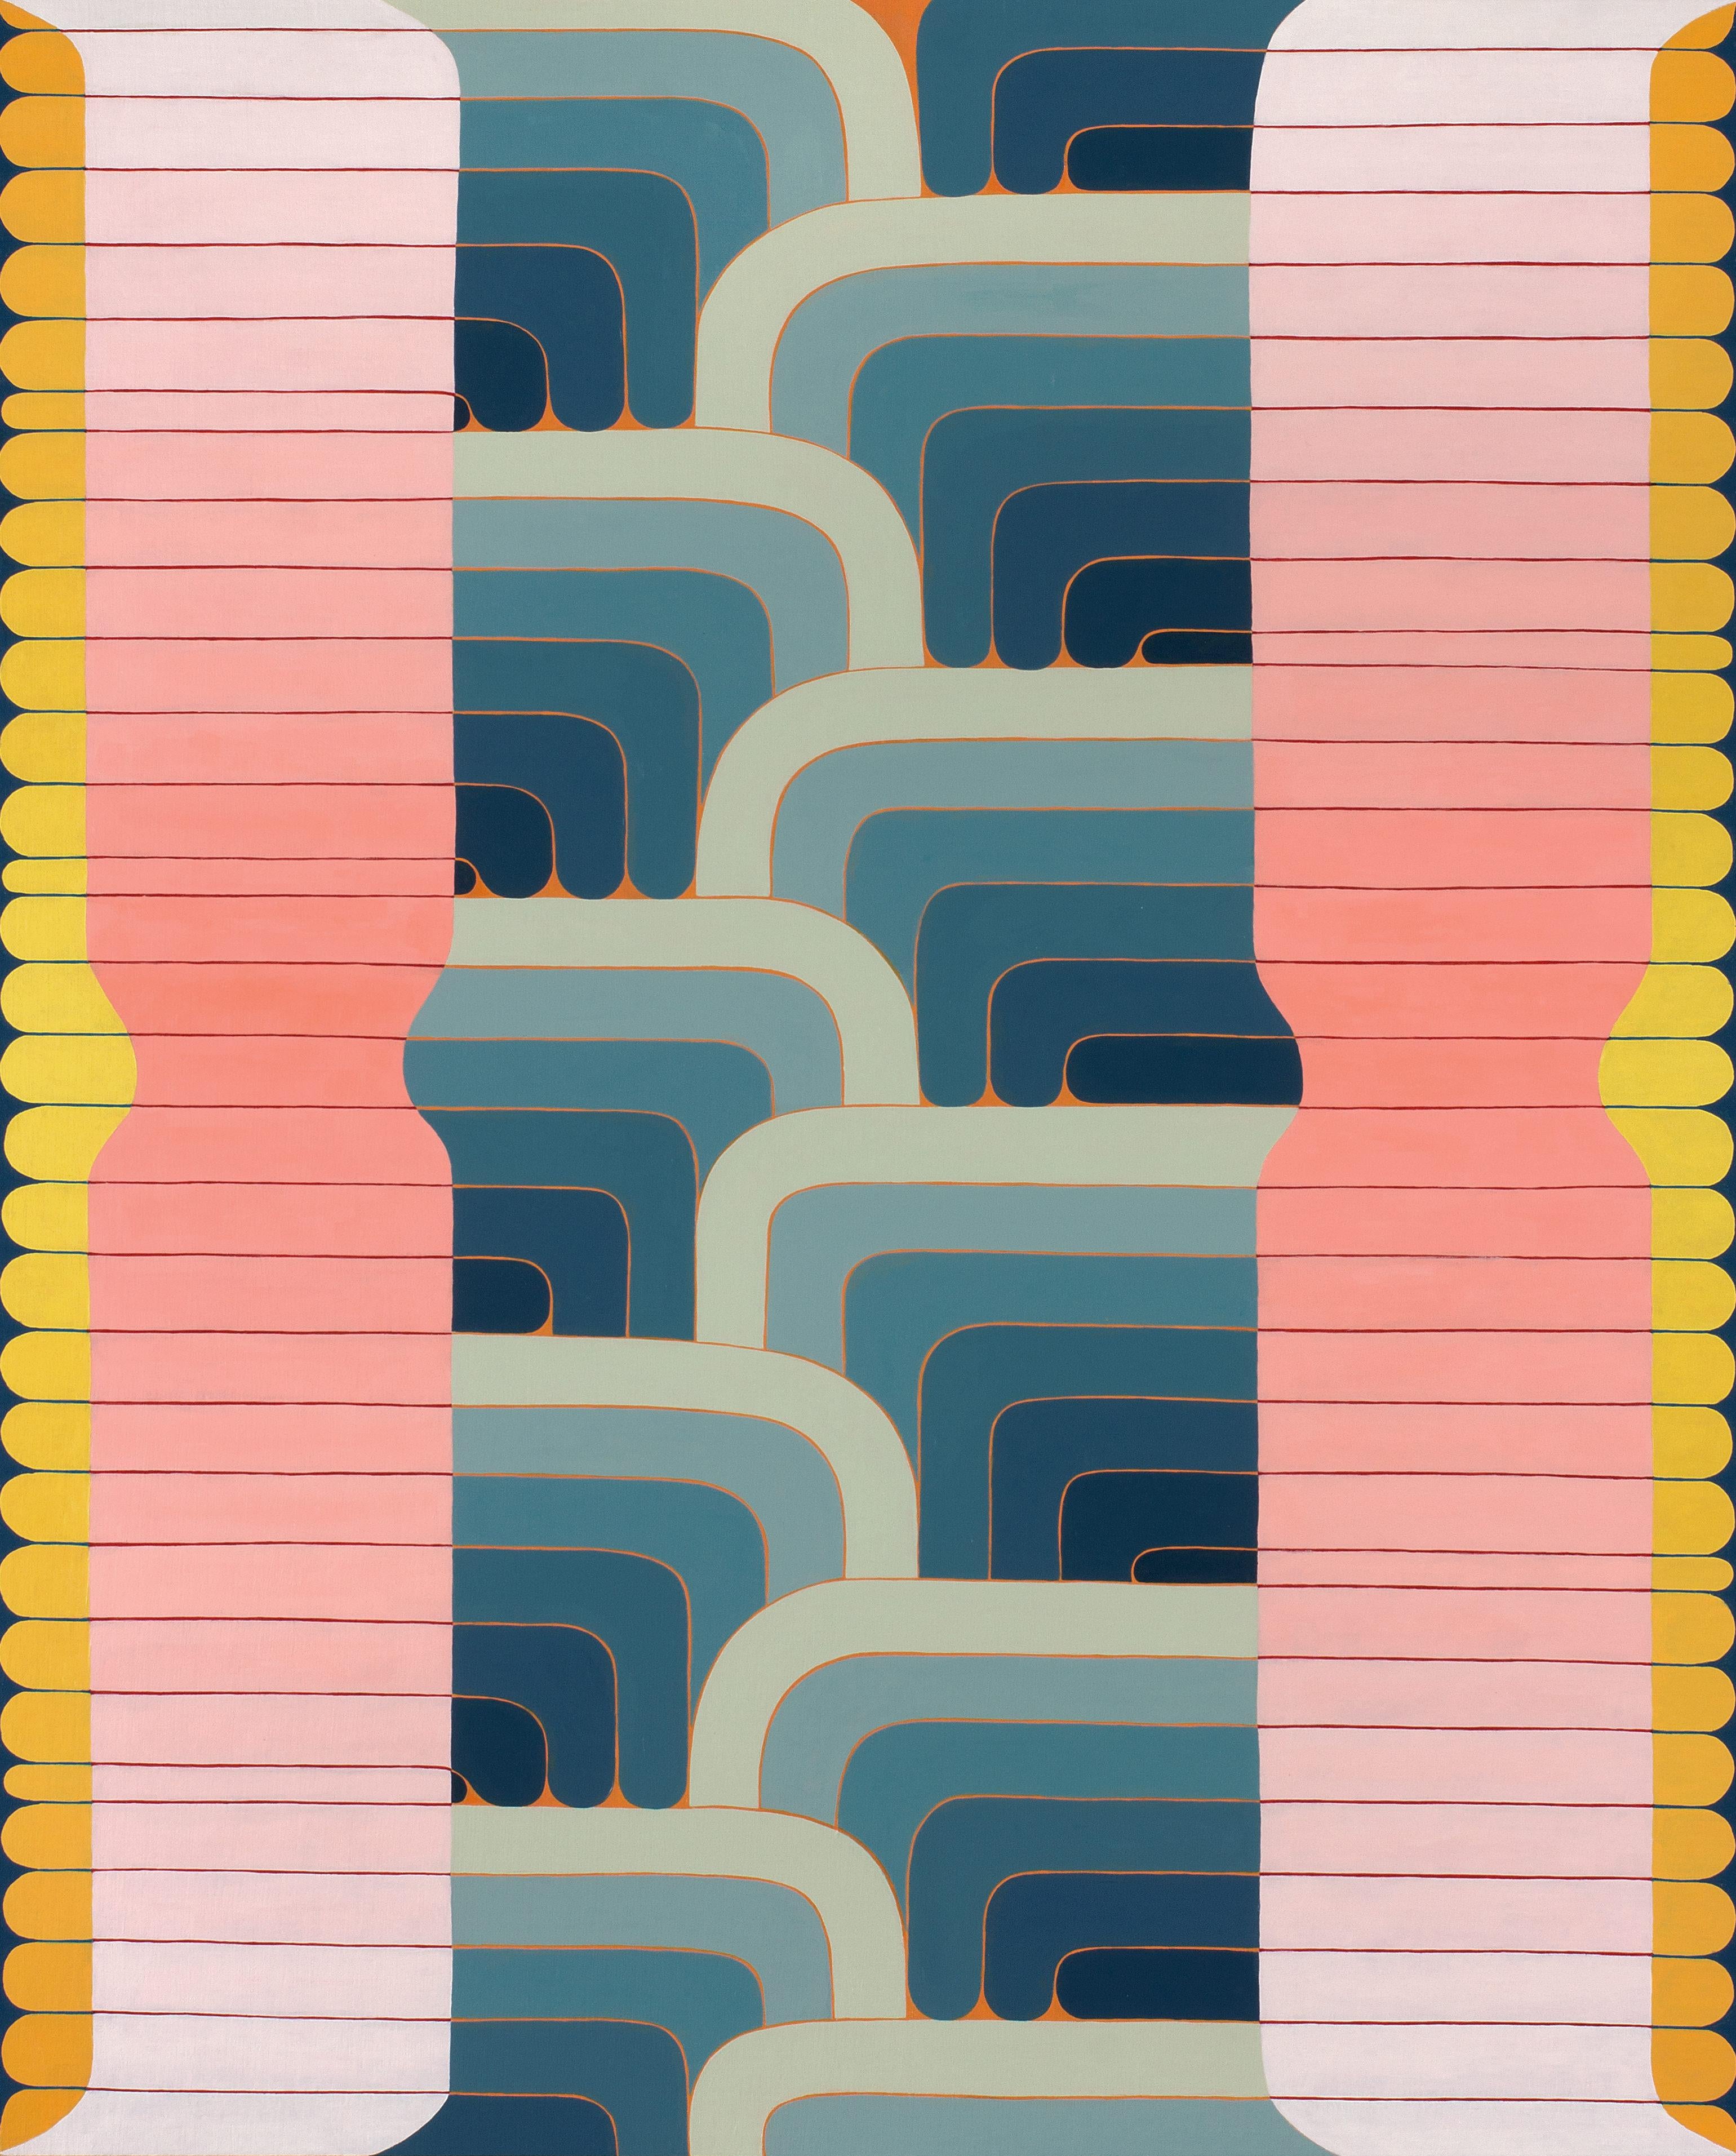 Abstract Painting Jenny Kemp - Midsection, rose, jaune doré, lignes courbes bleu indigo, abstrait géométrique